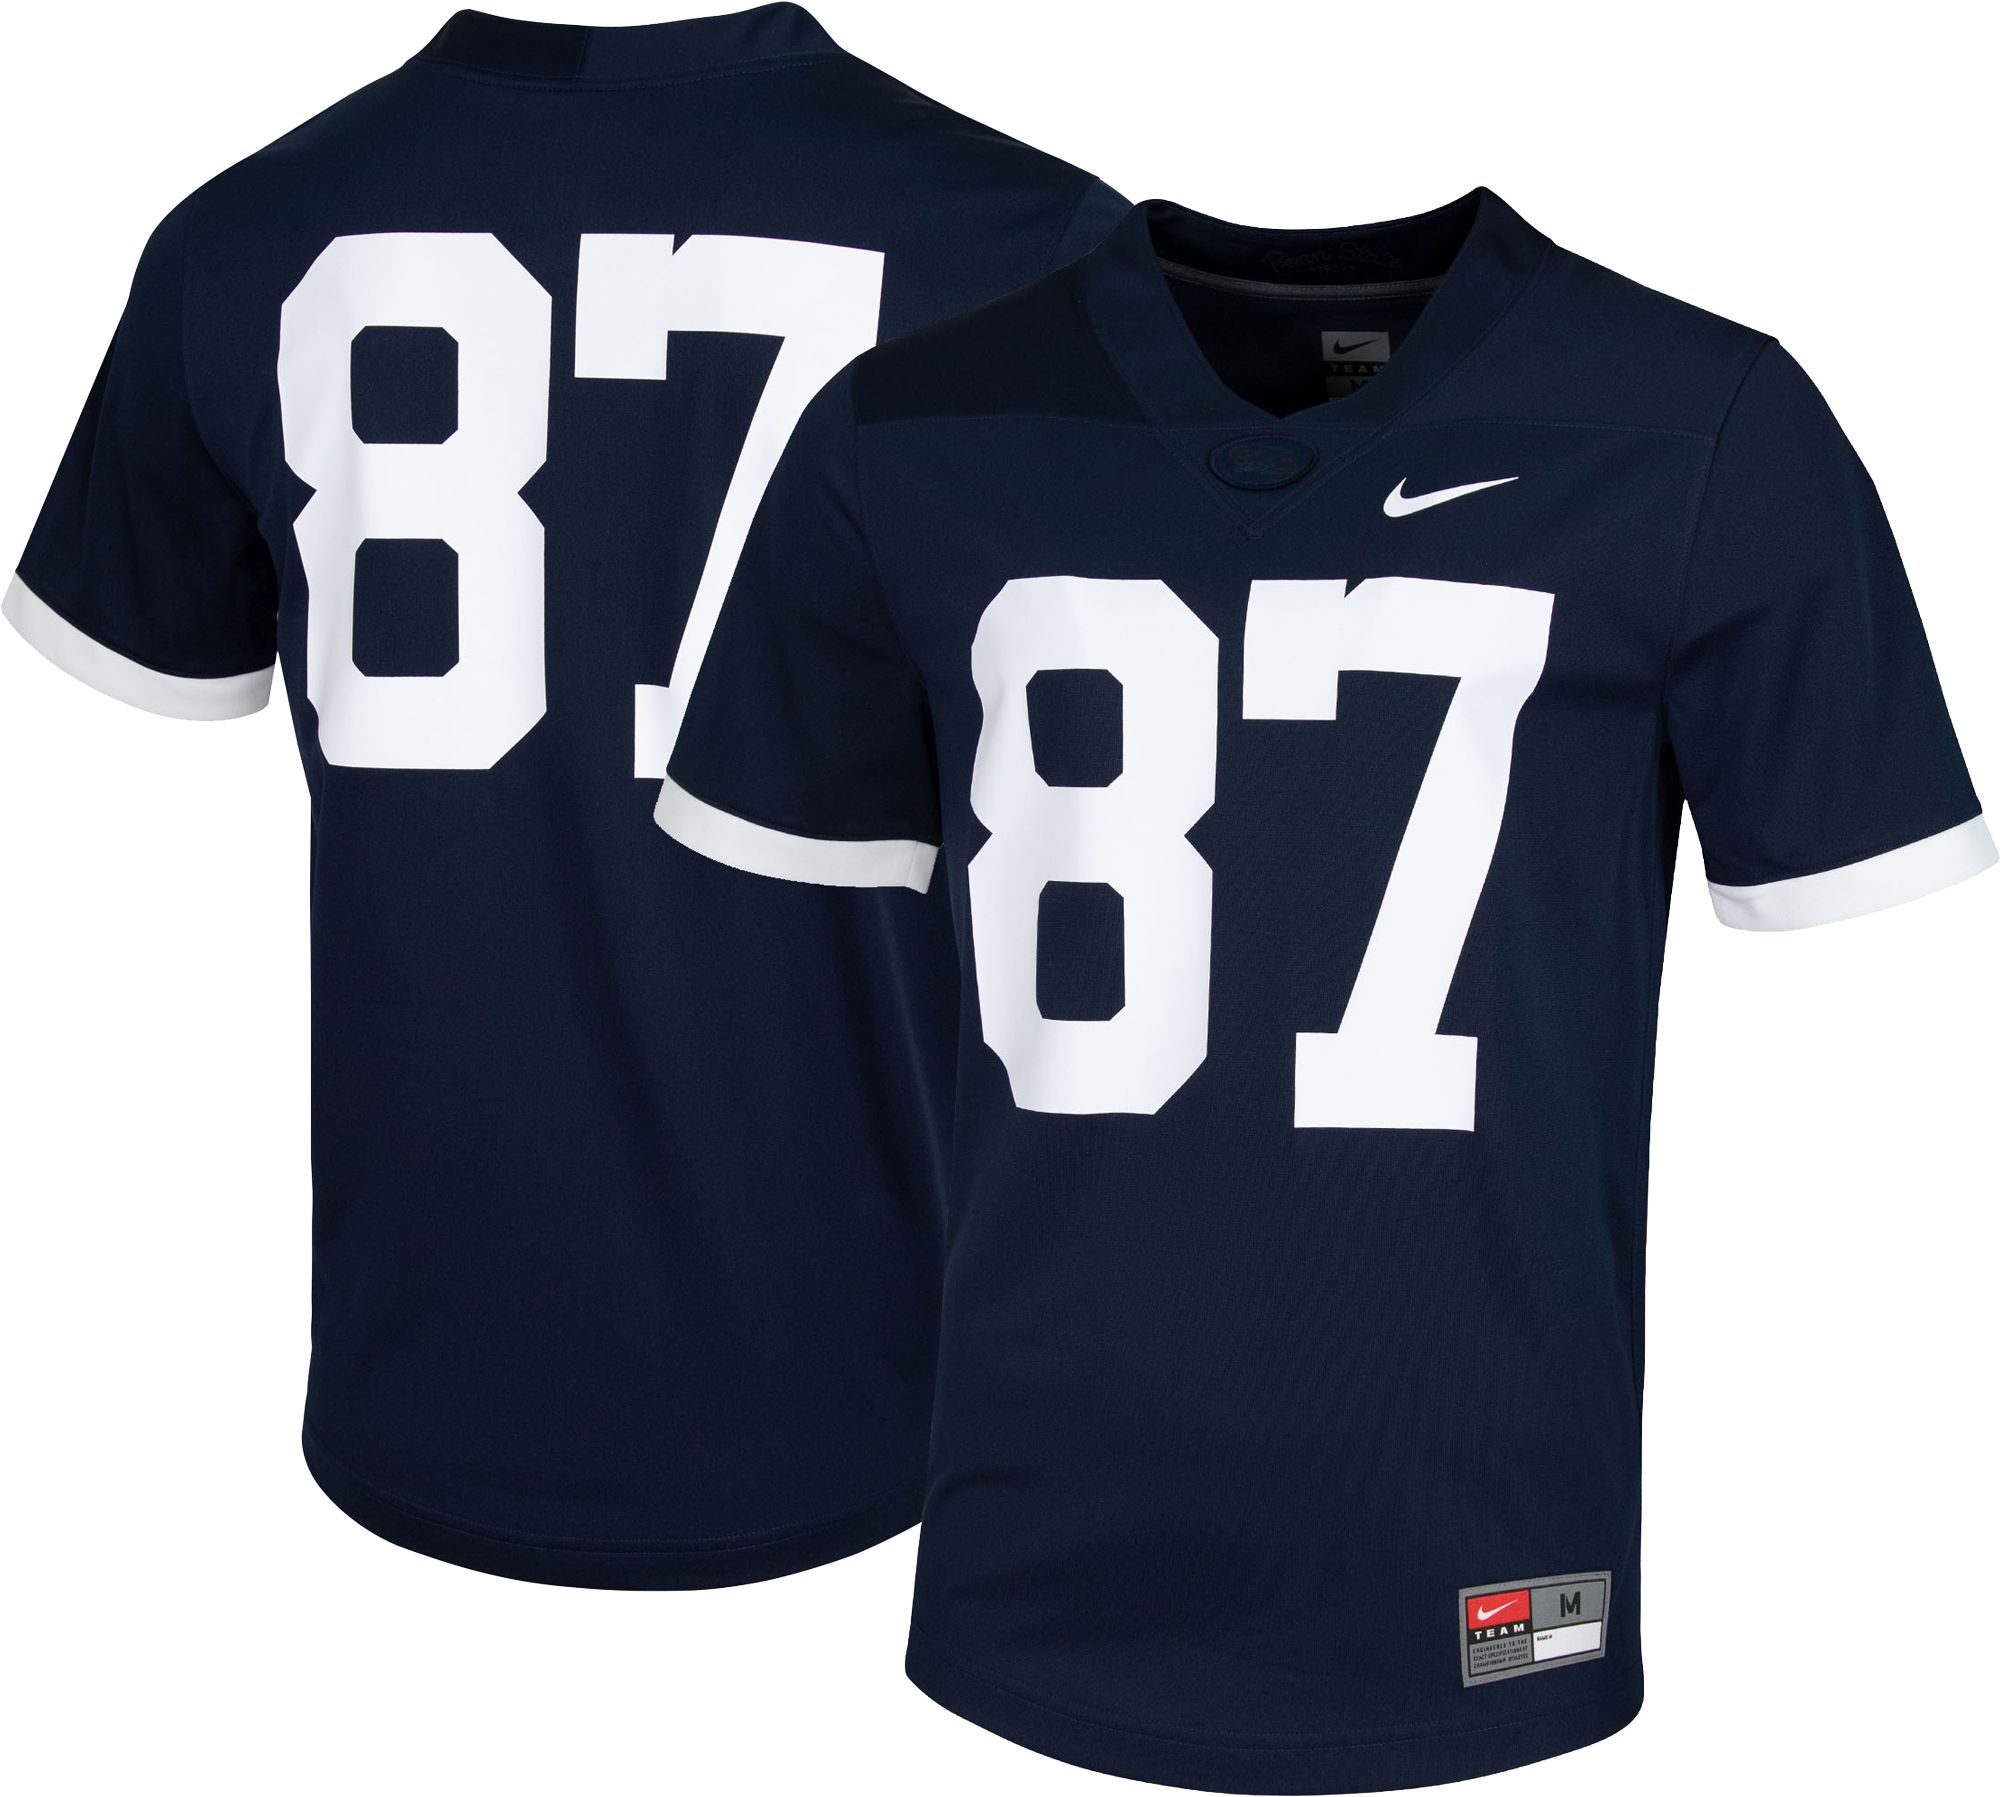 Nike Men's Penn State Nittany Lions #87 